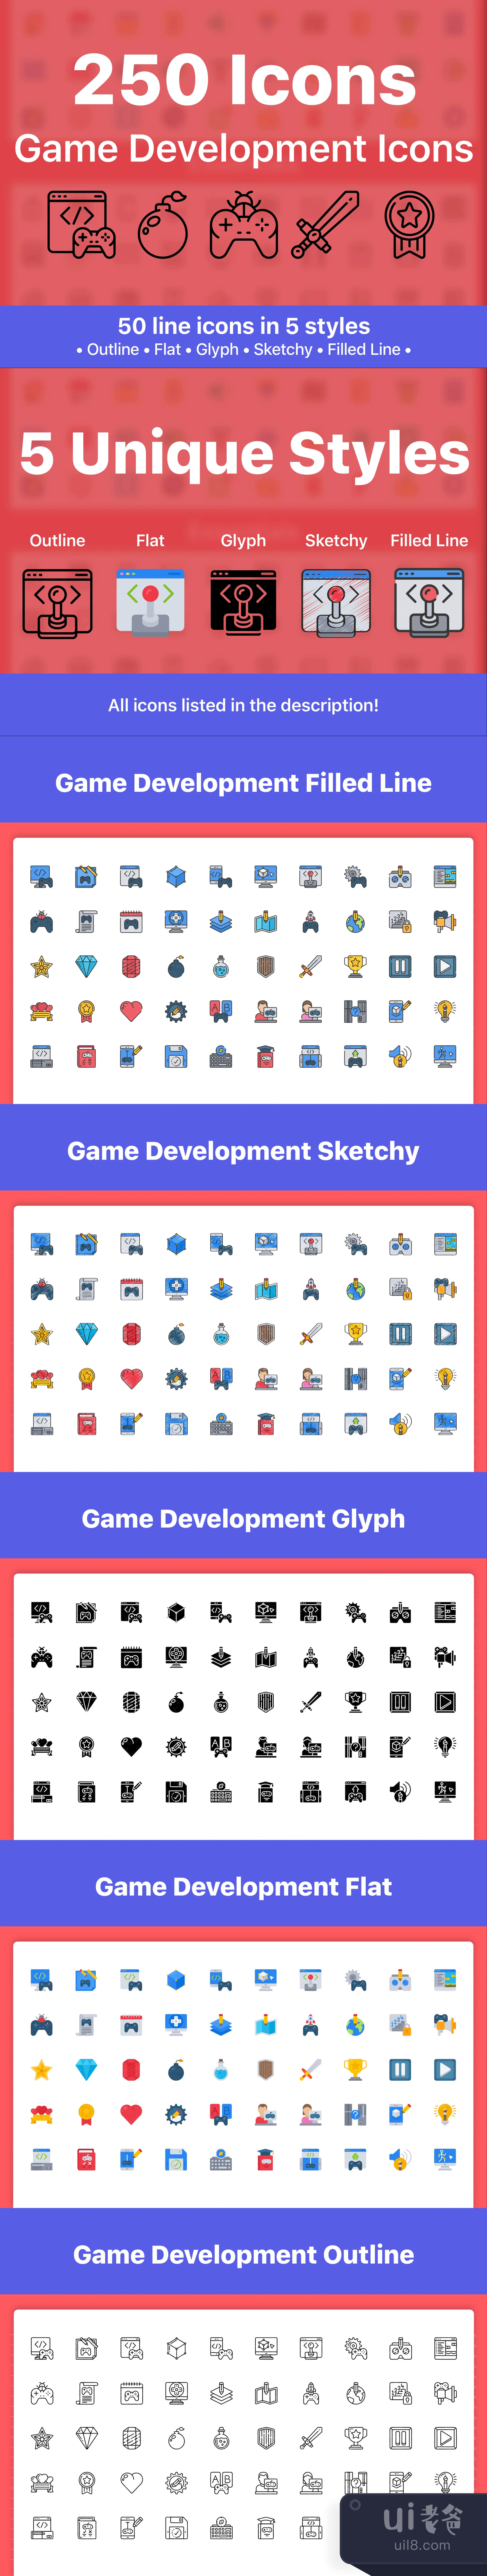 250个游戏开发图标 (250 Game Development Icons)插图